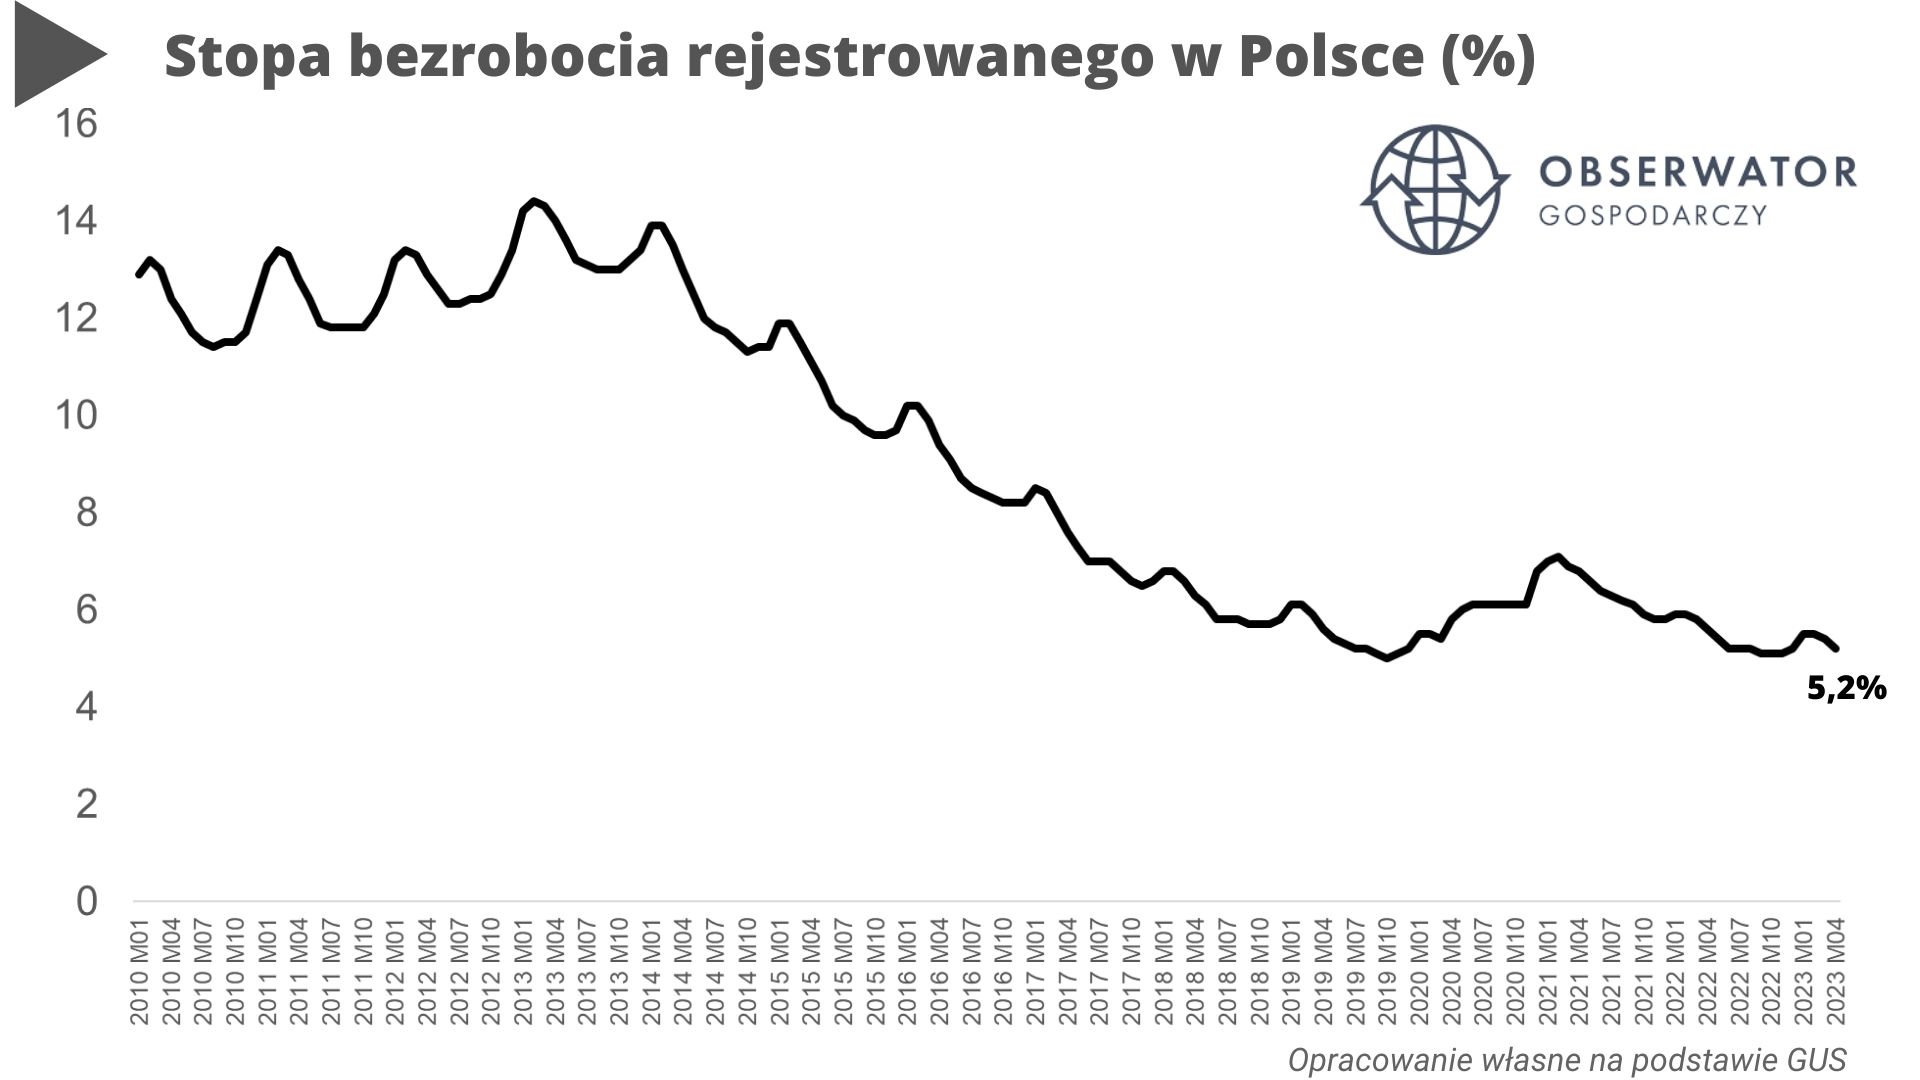 Bezrobocie w Polsce wciąż historycznie niskie! Rynek pracy szerokim łukiem omija kryzys